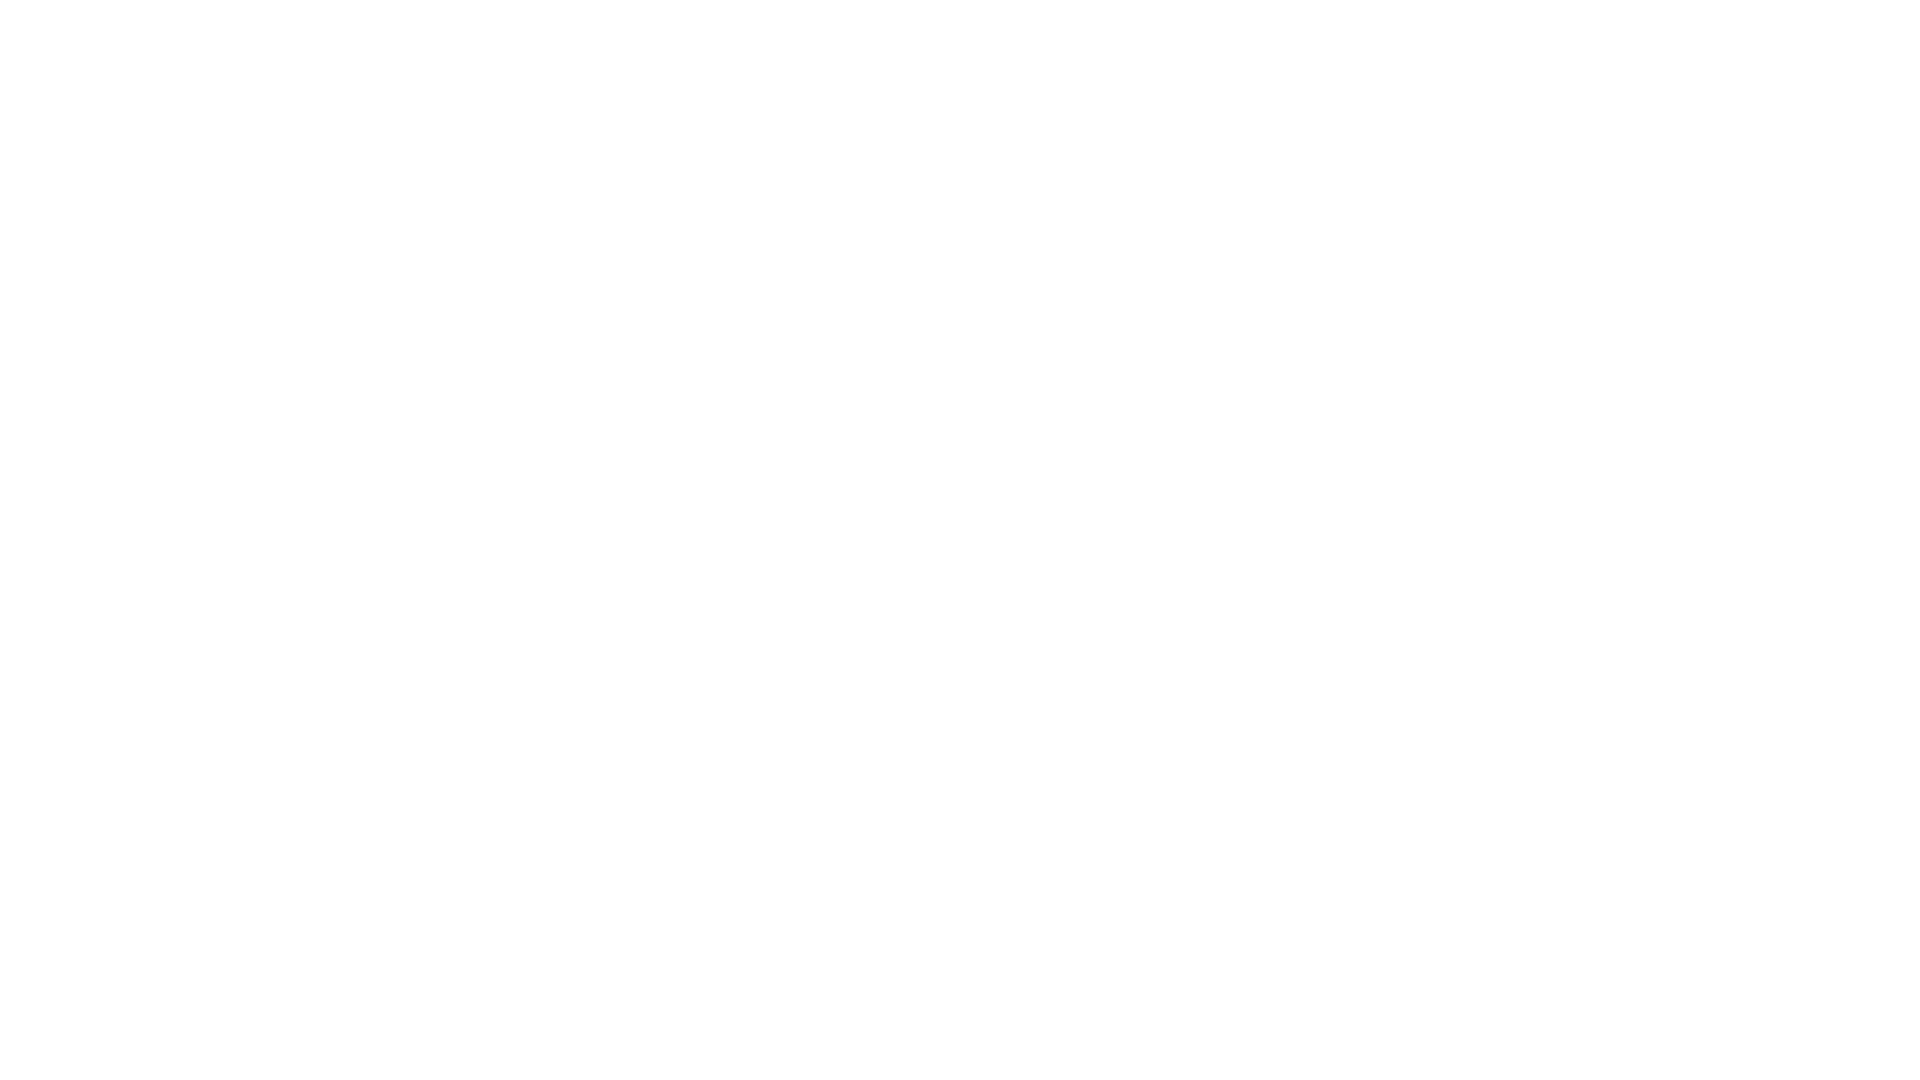 Road Runner Logo